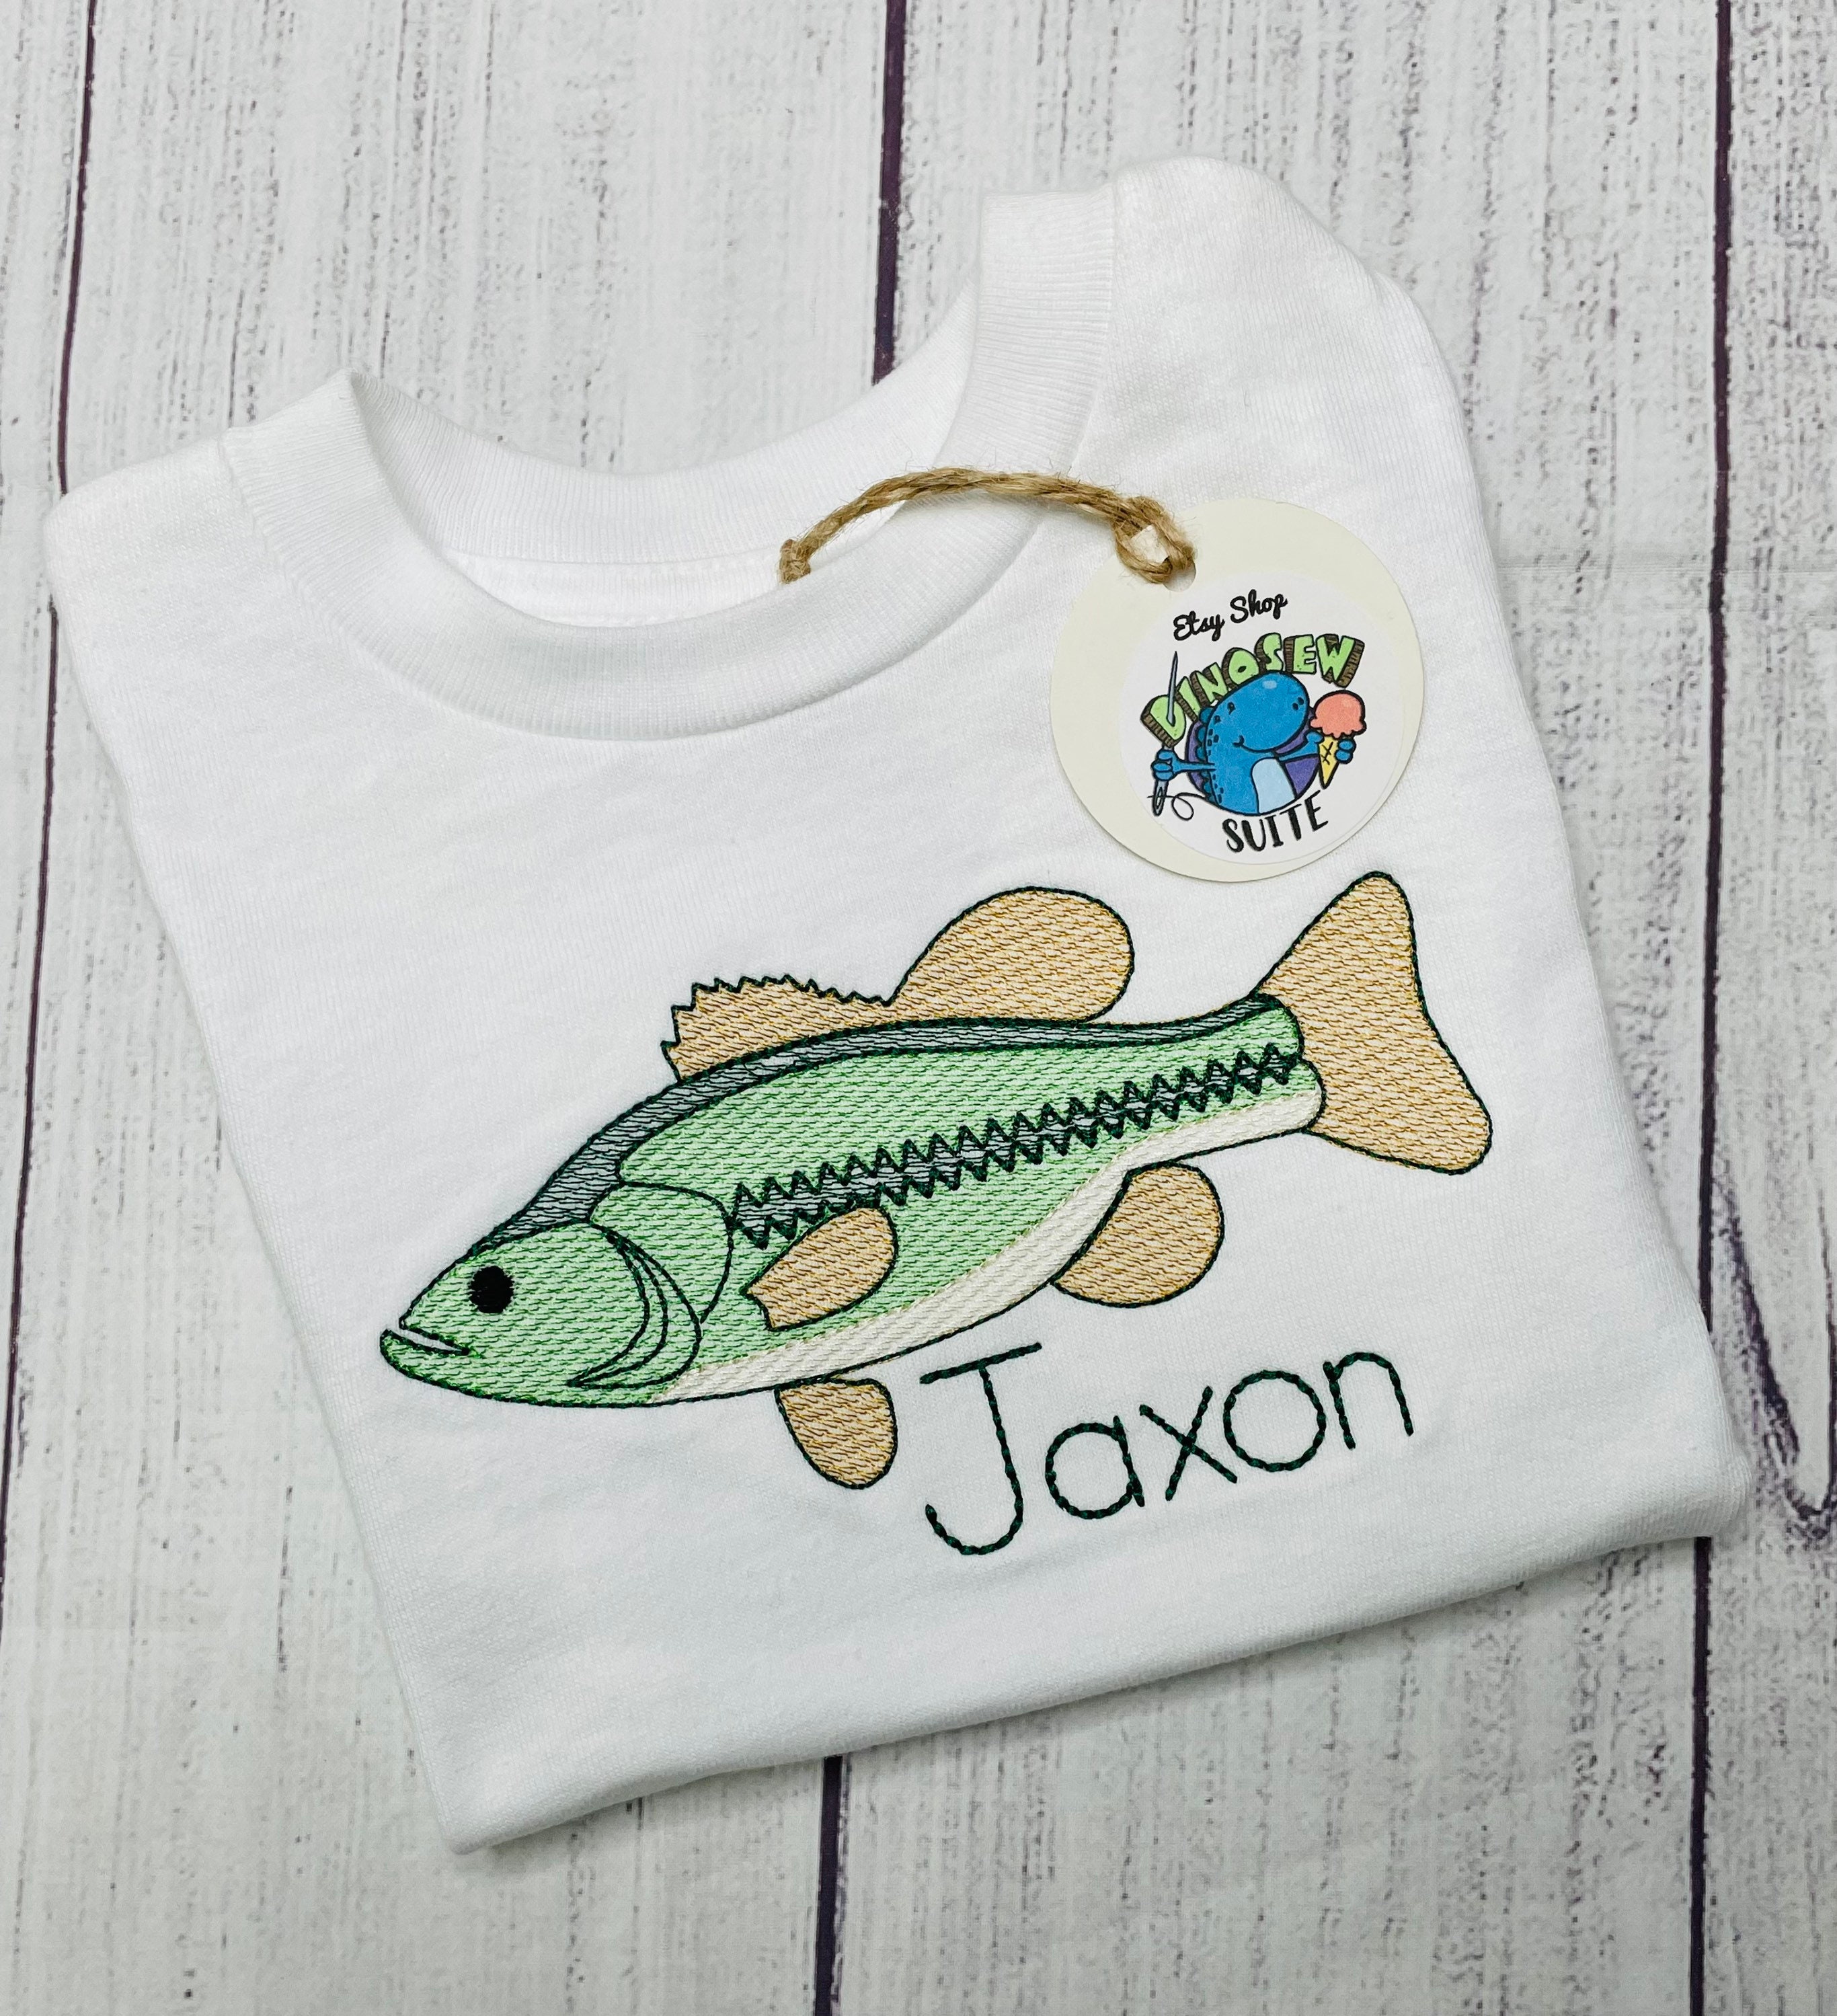 Gone Fishing Bass Fish Kid Boy Men Women Toddler Women T-shirt